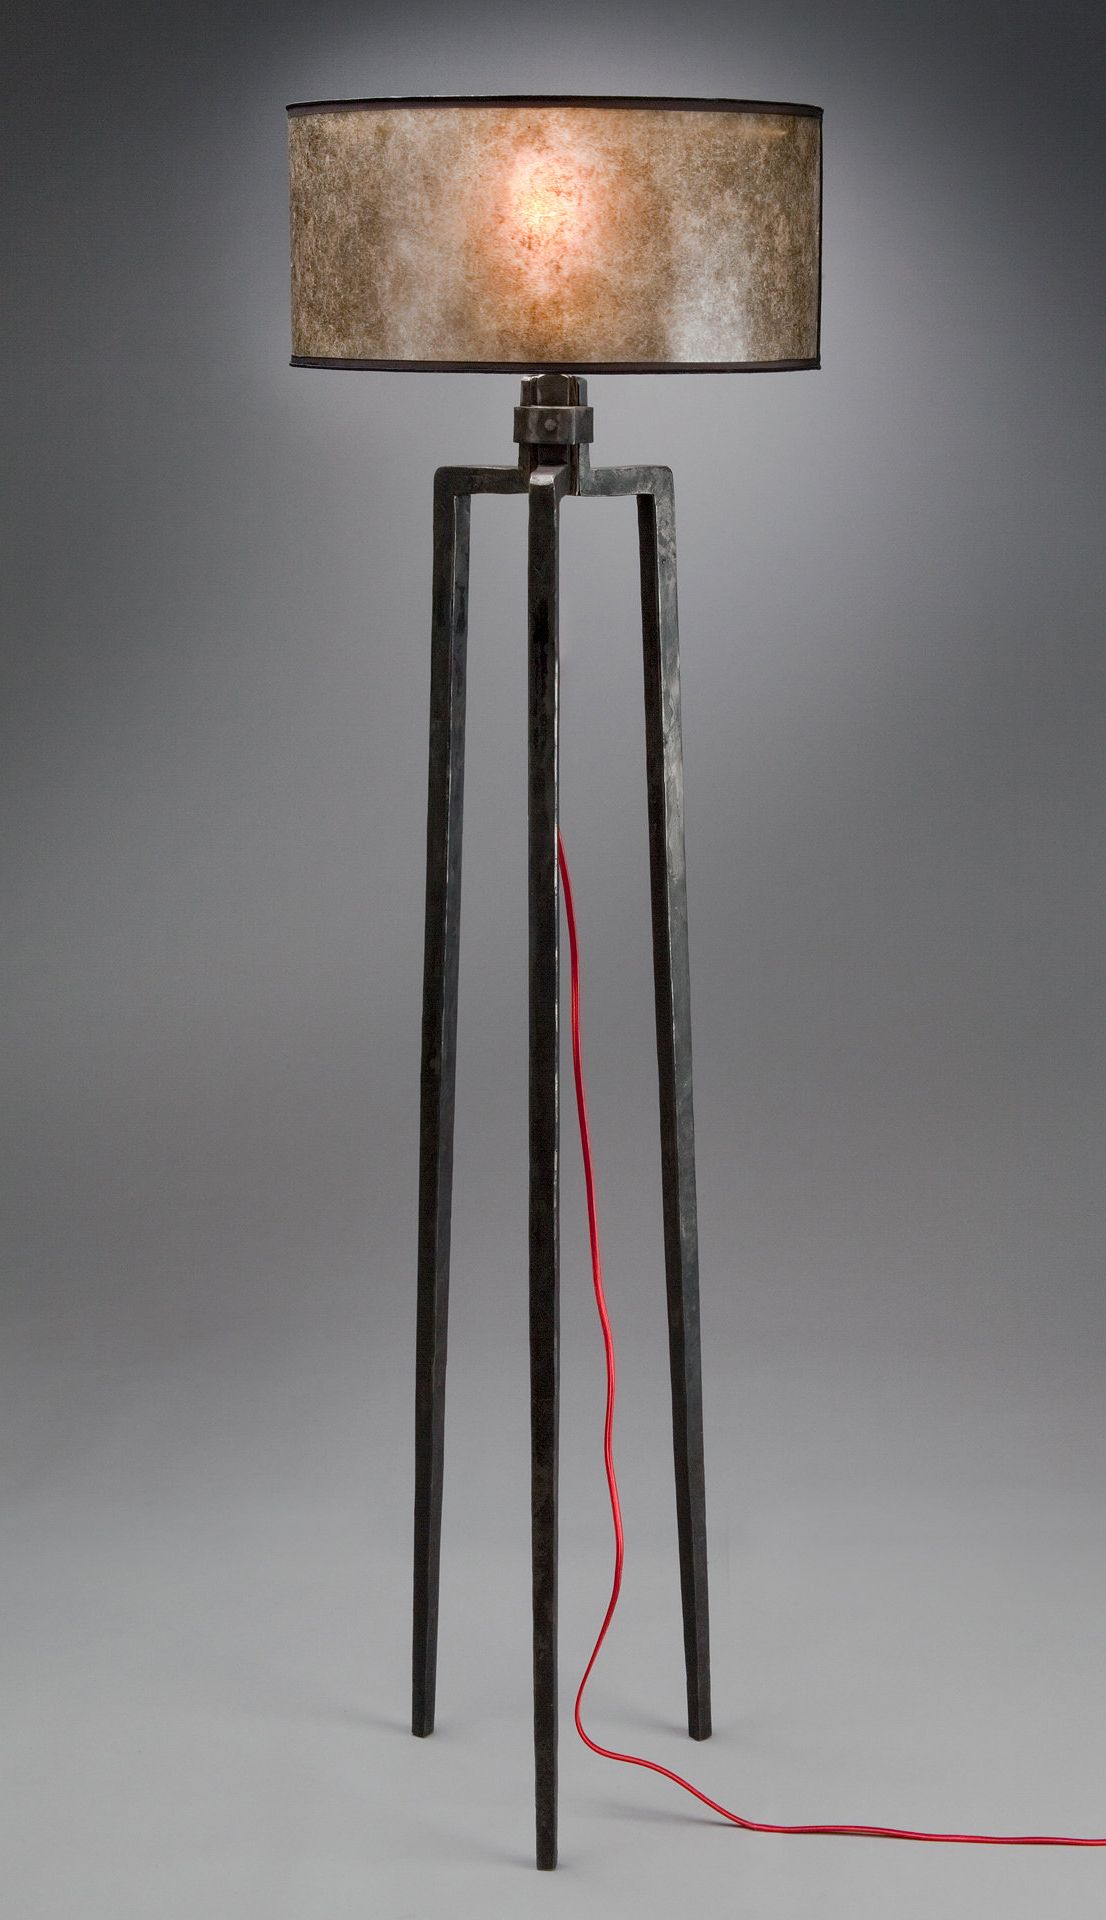 Metal Floor Lamps With Well Known Tripod Floor Lampluke Proctor (metal Floor Lamp) (View 5 of 15)